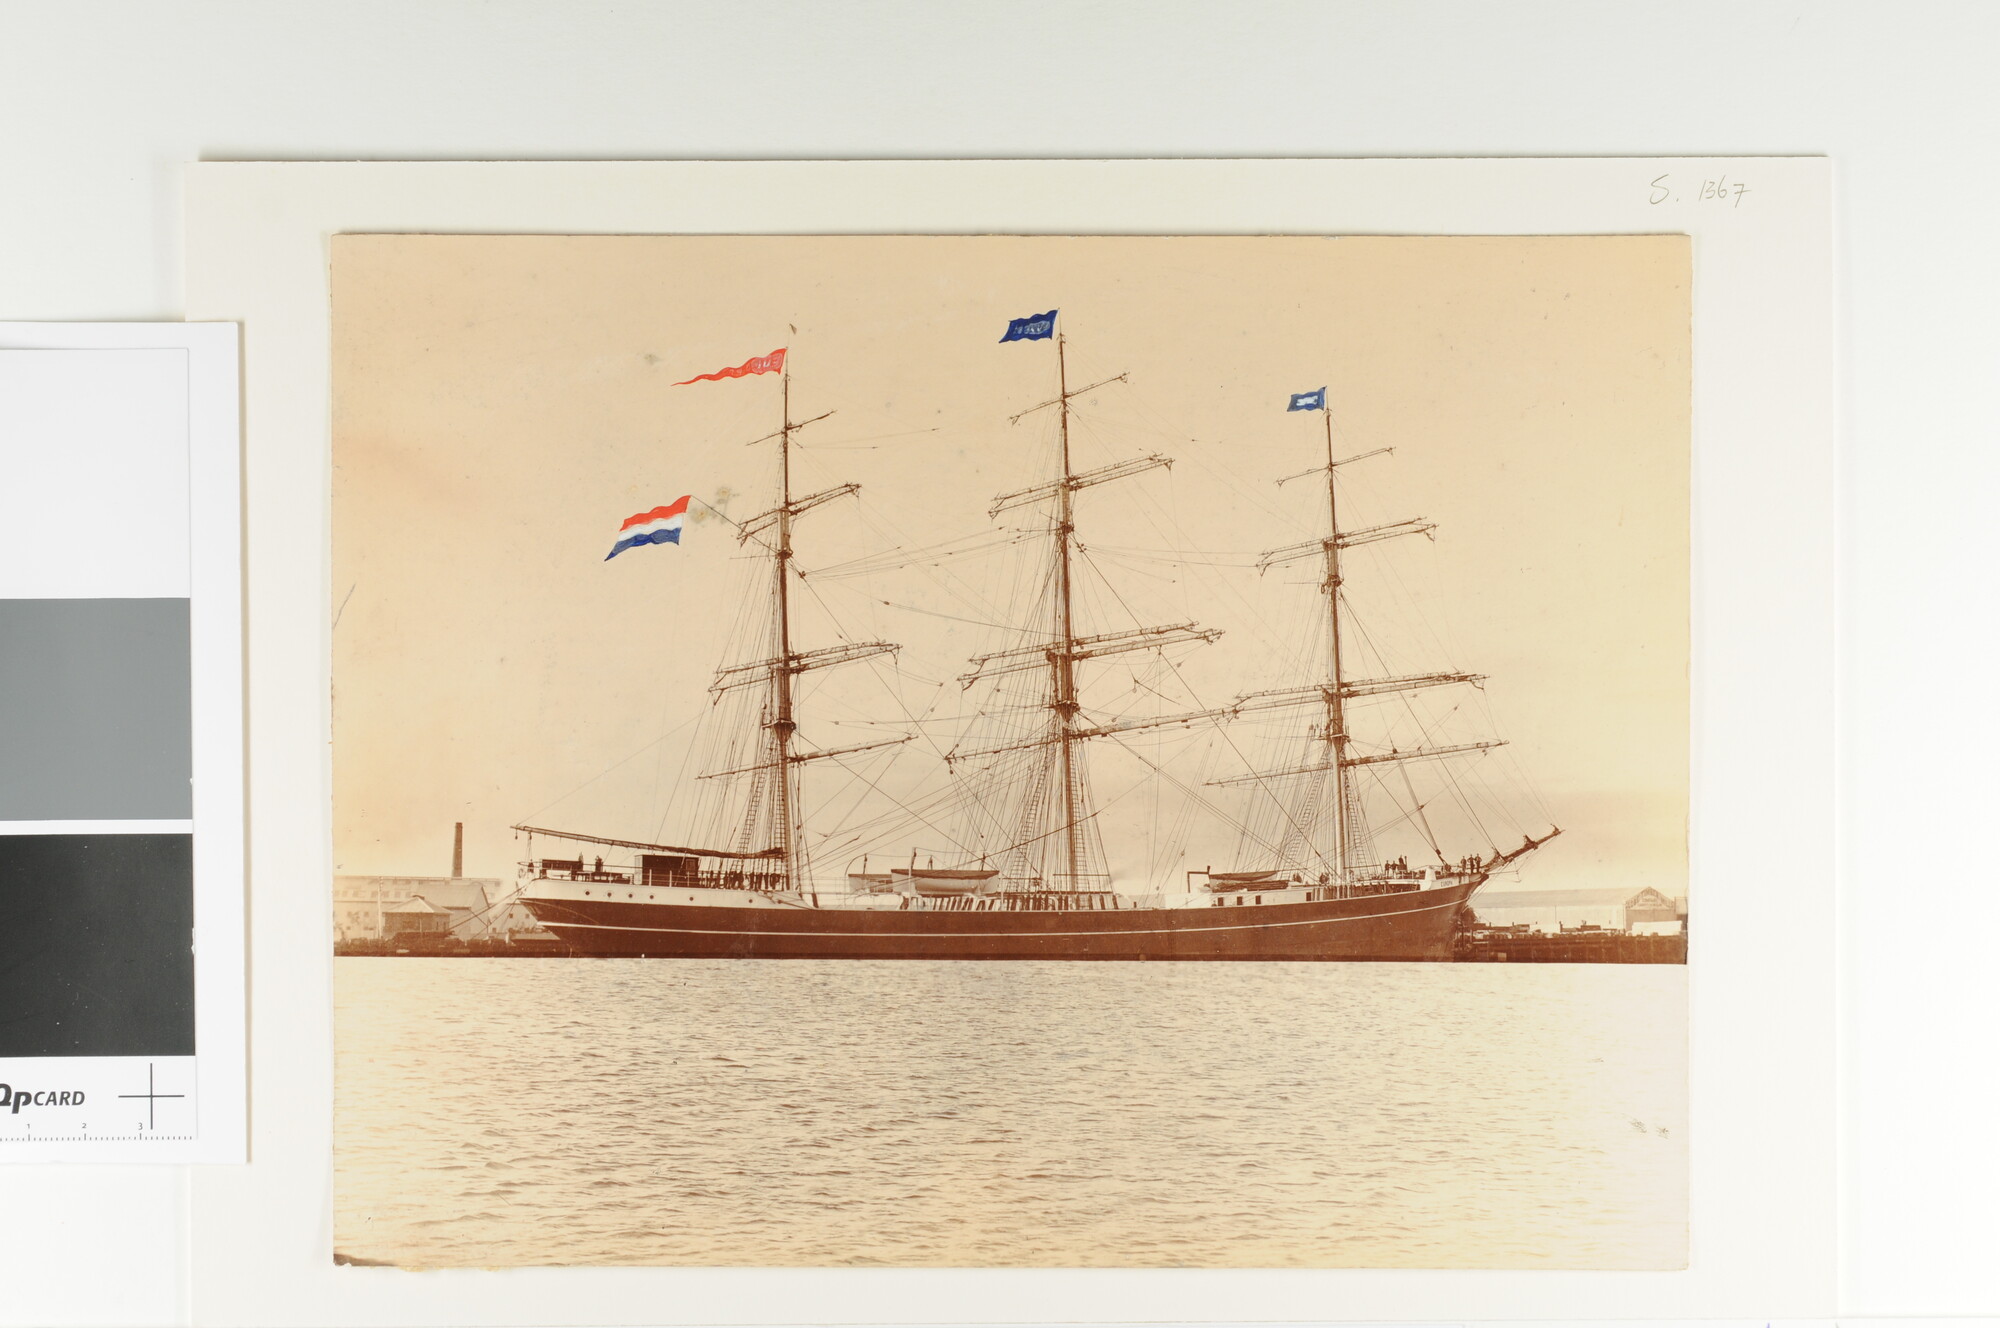 S.1367; Het fregat 'Europa' liggende in een Australische haven, onder bevel van Kapt. G. Bona; foto